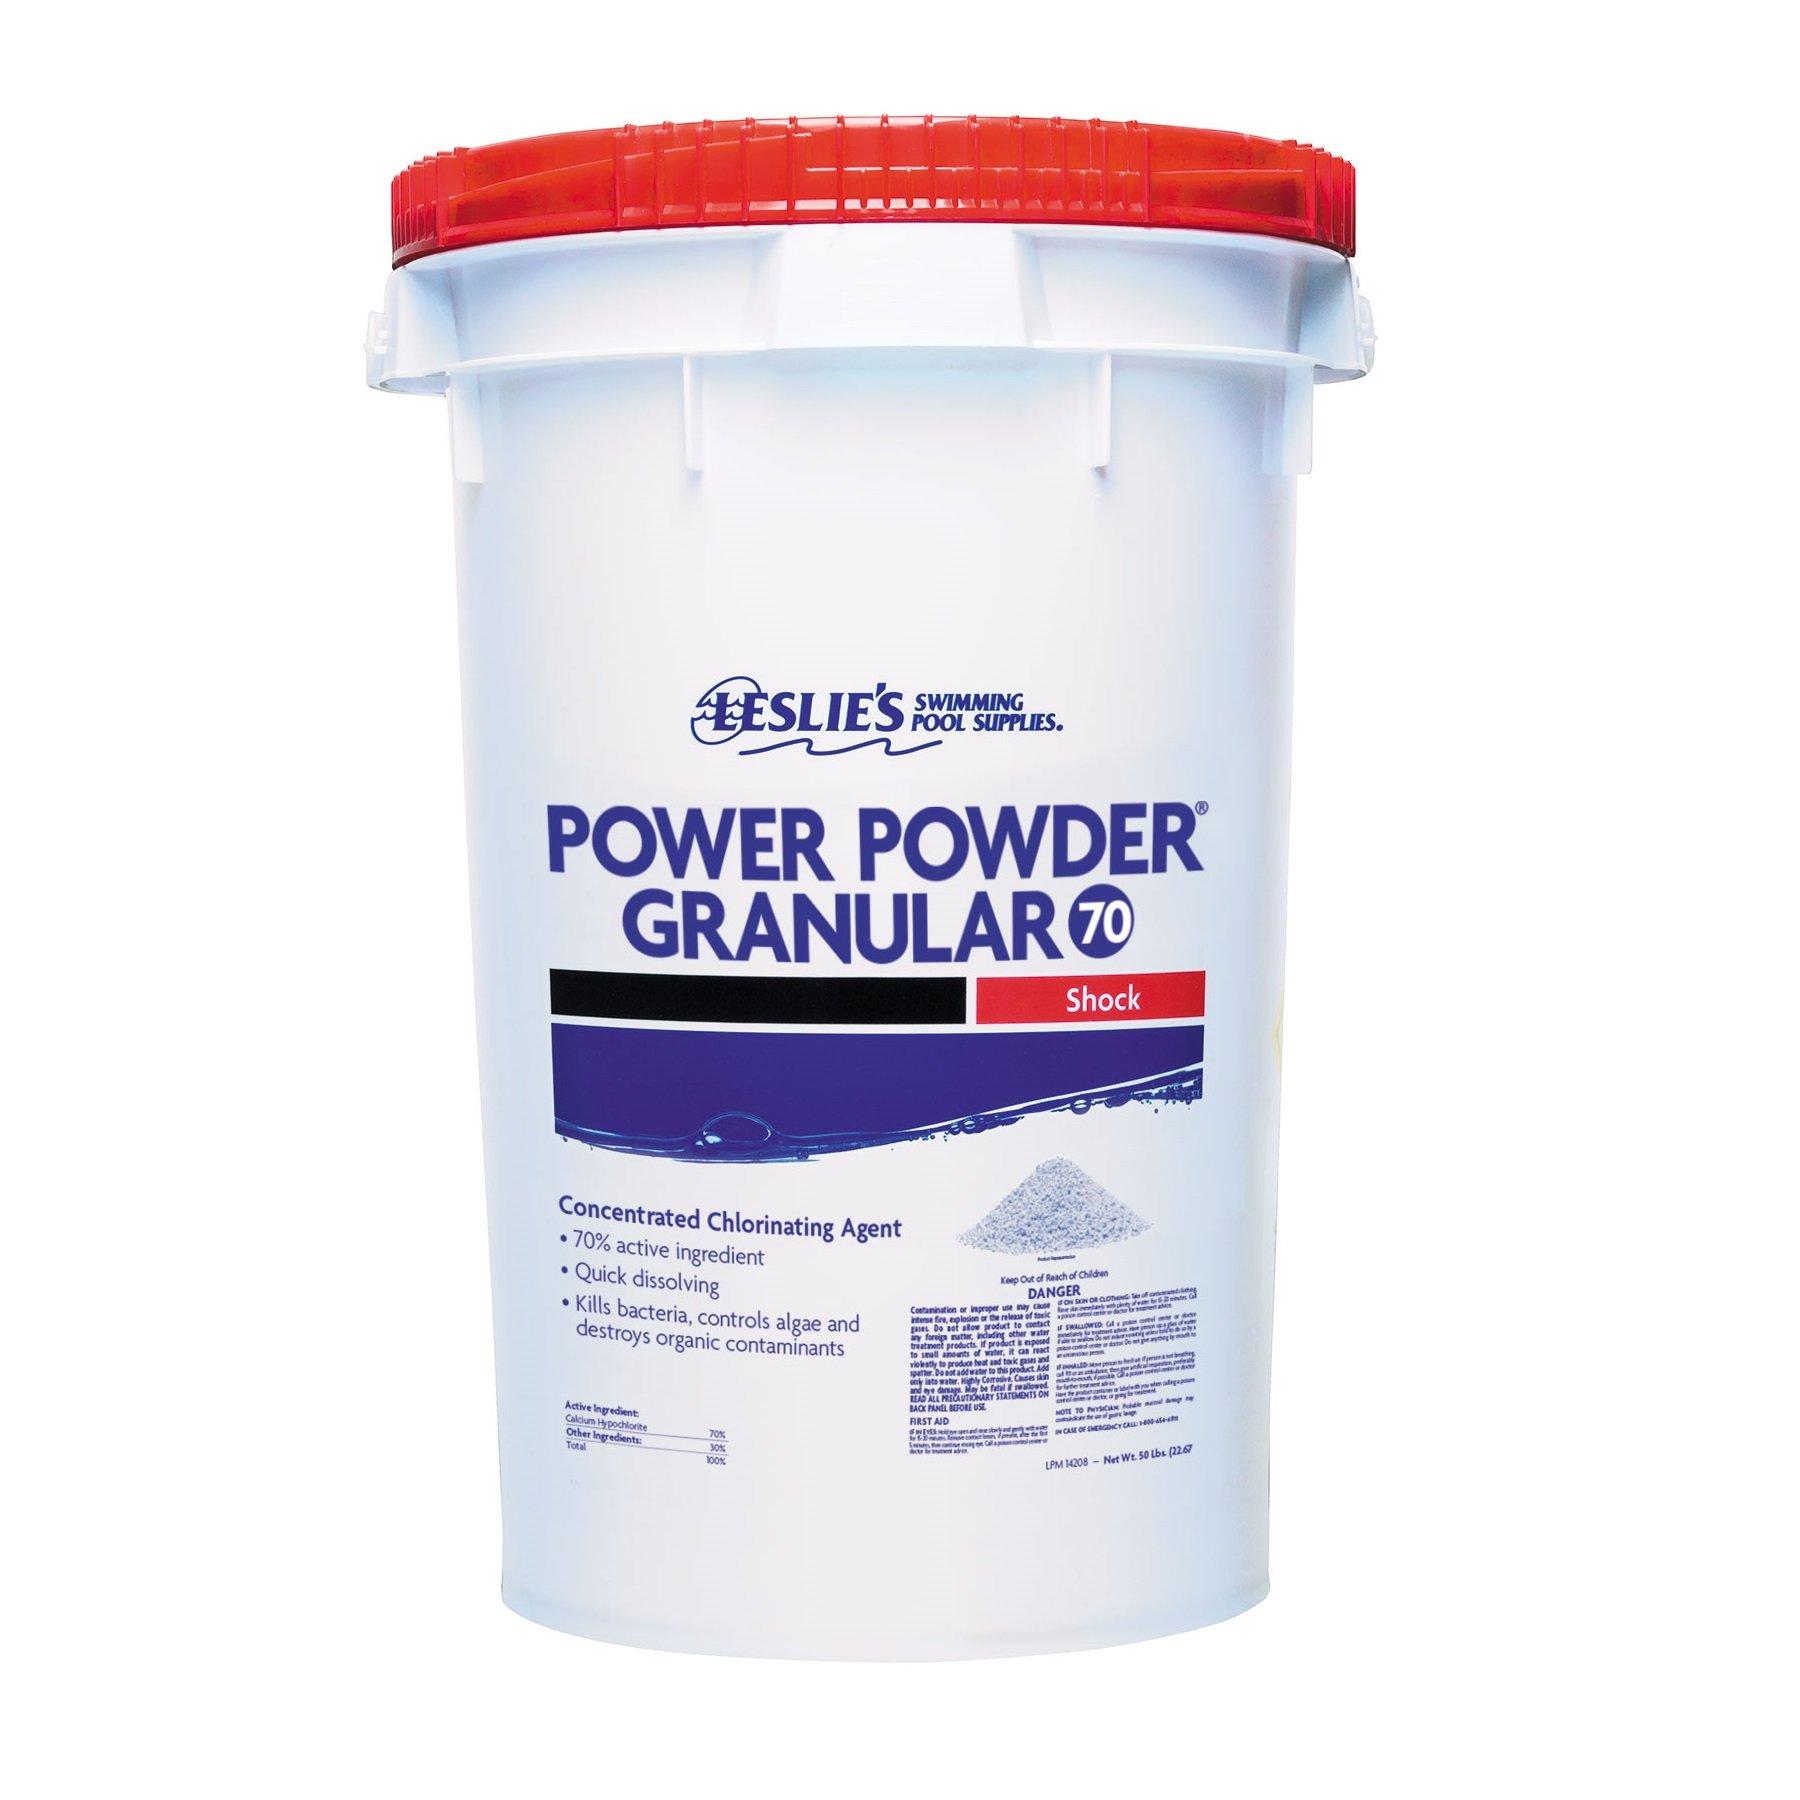 Leslie's Power Powder Granules